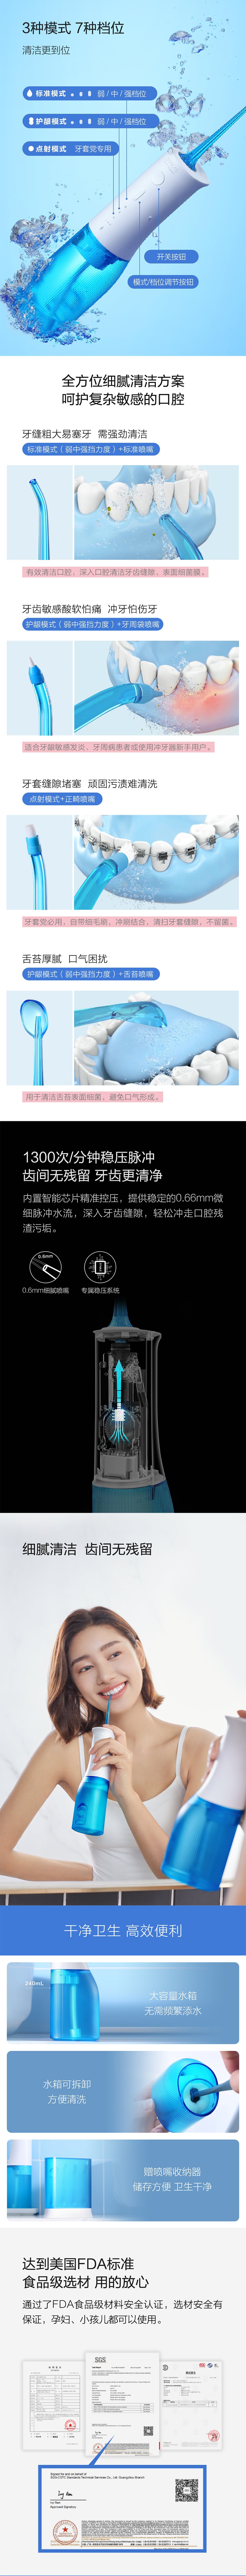 【中国直邮】小米有品 素士便携冲牙器W3 pro 蓝色